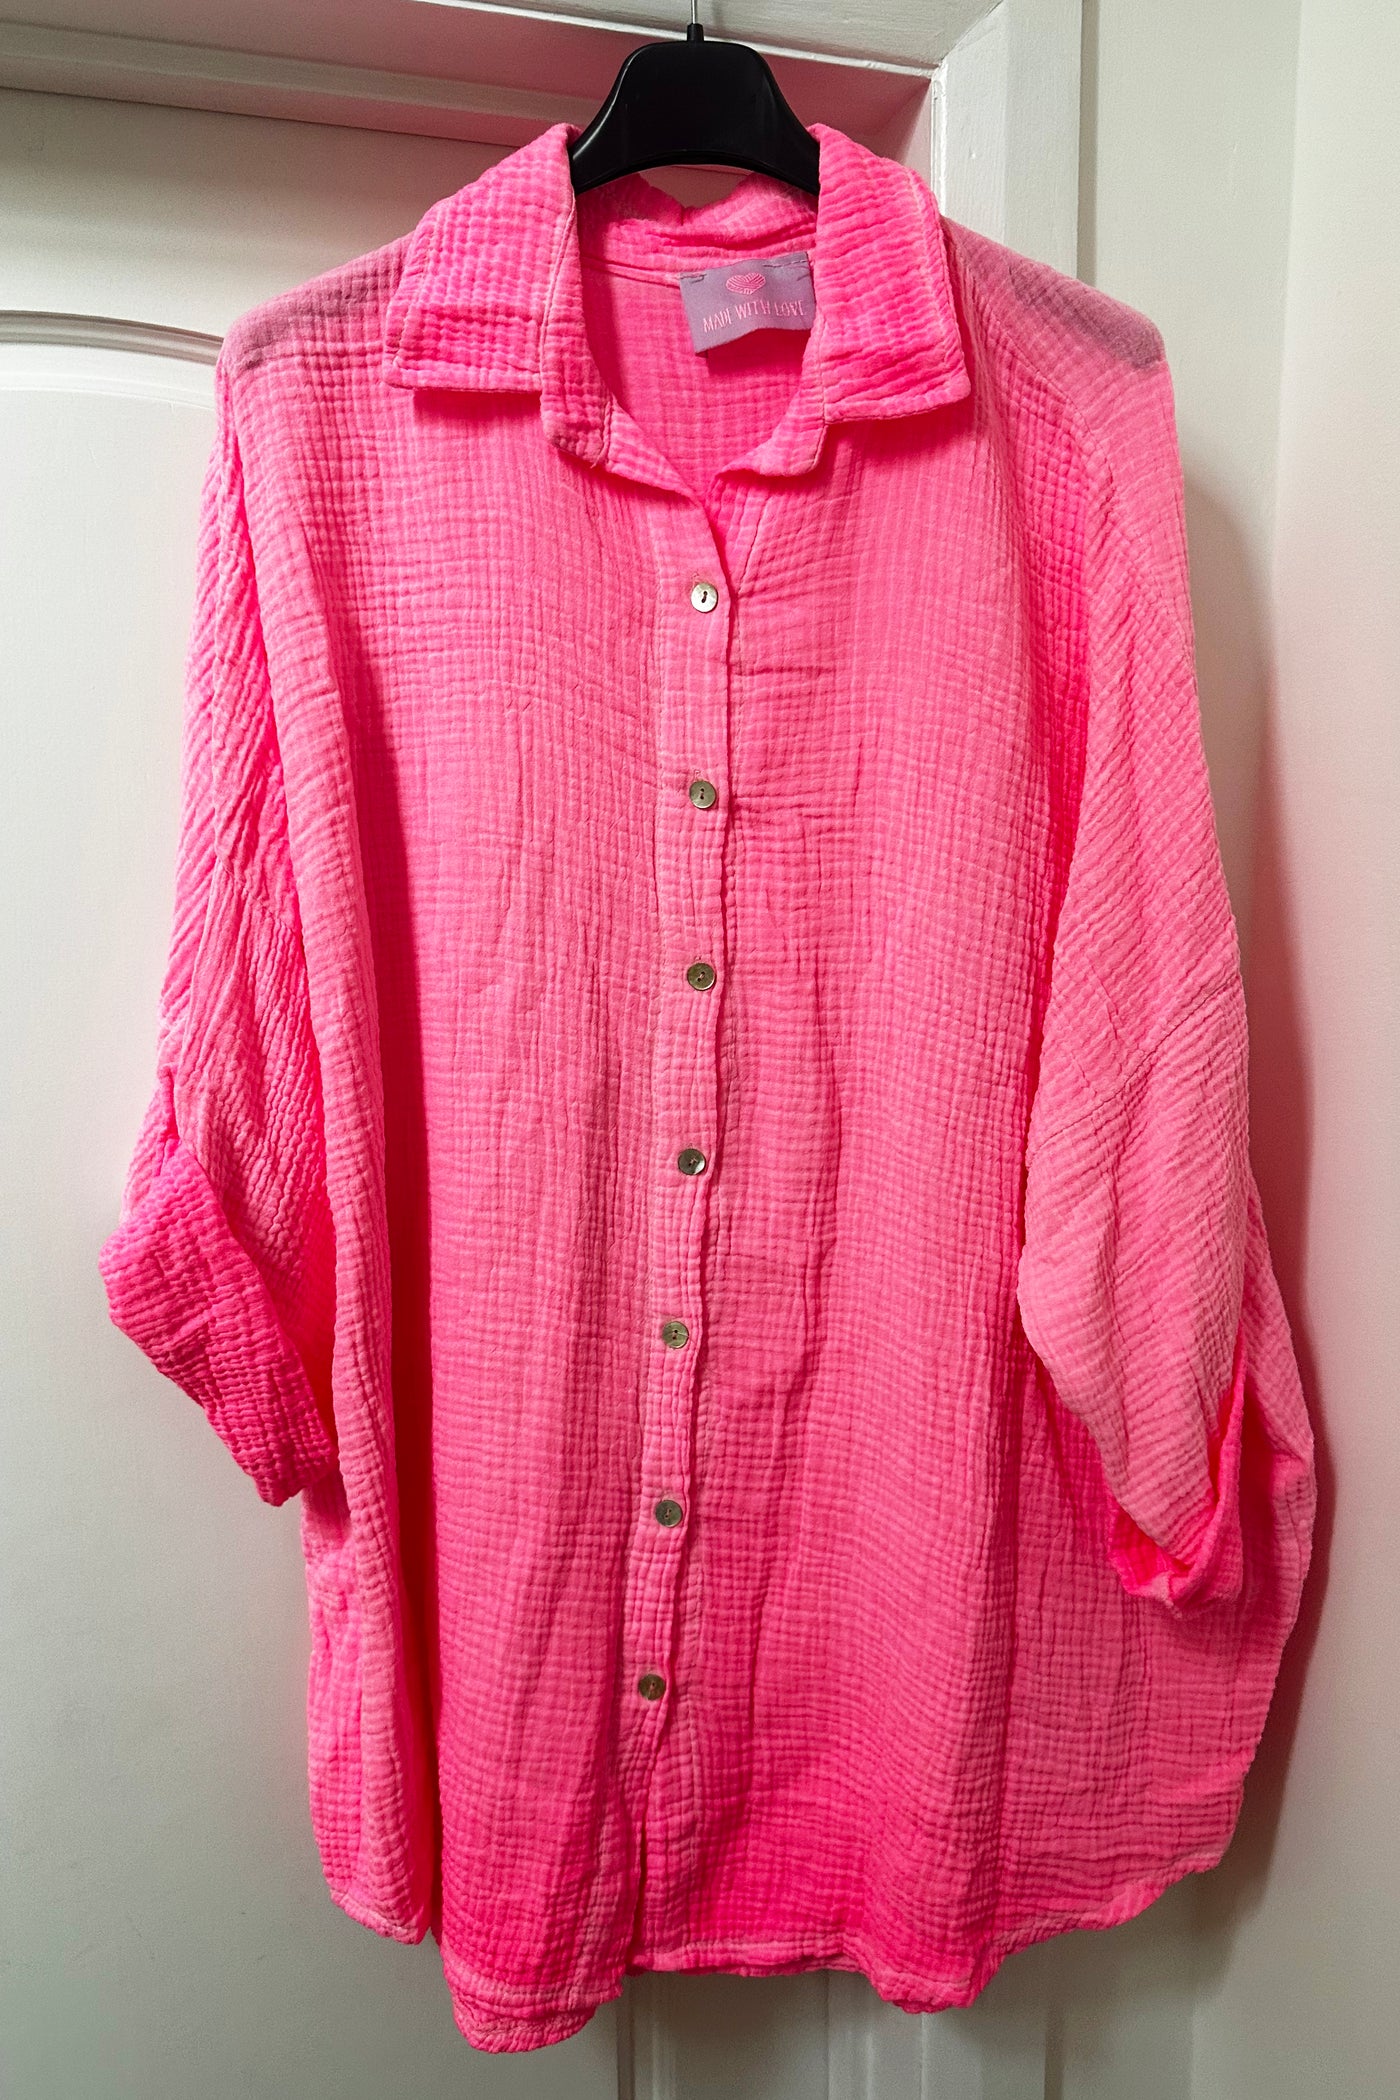 Angel Sequin Shirt - Neon Pink